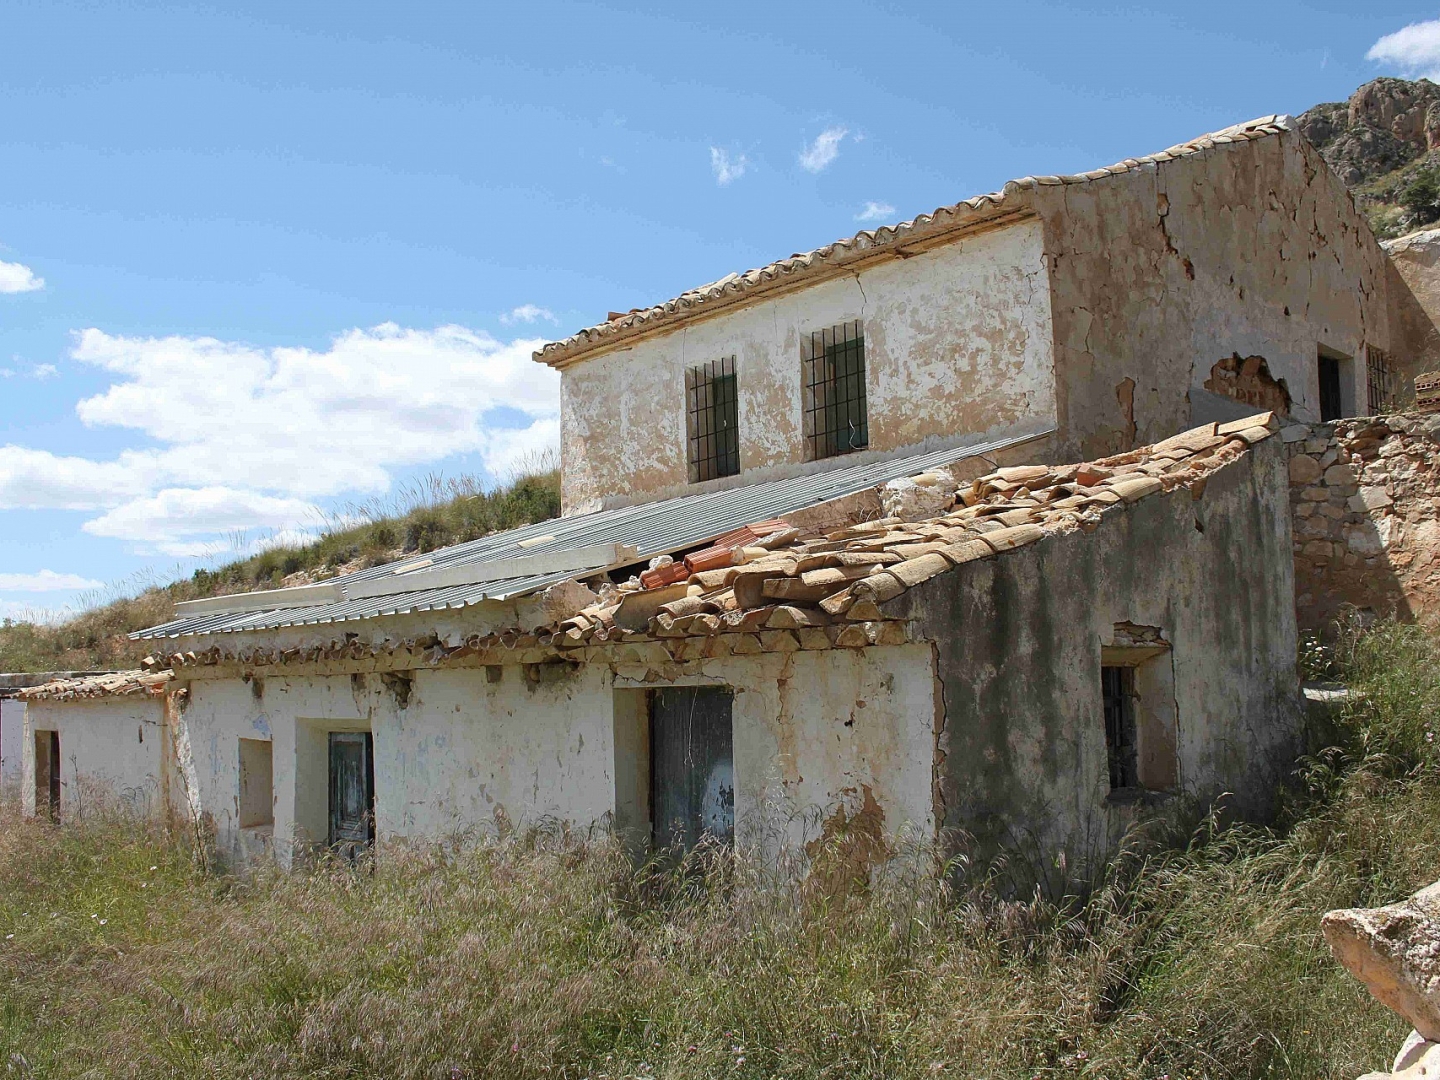 Restoration Project in Jumilla